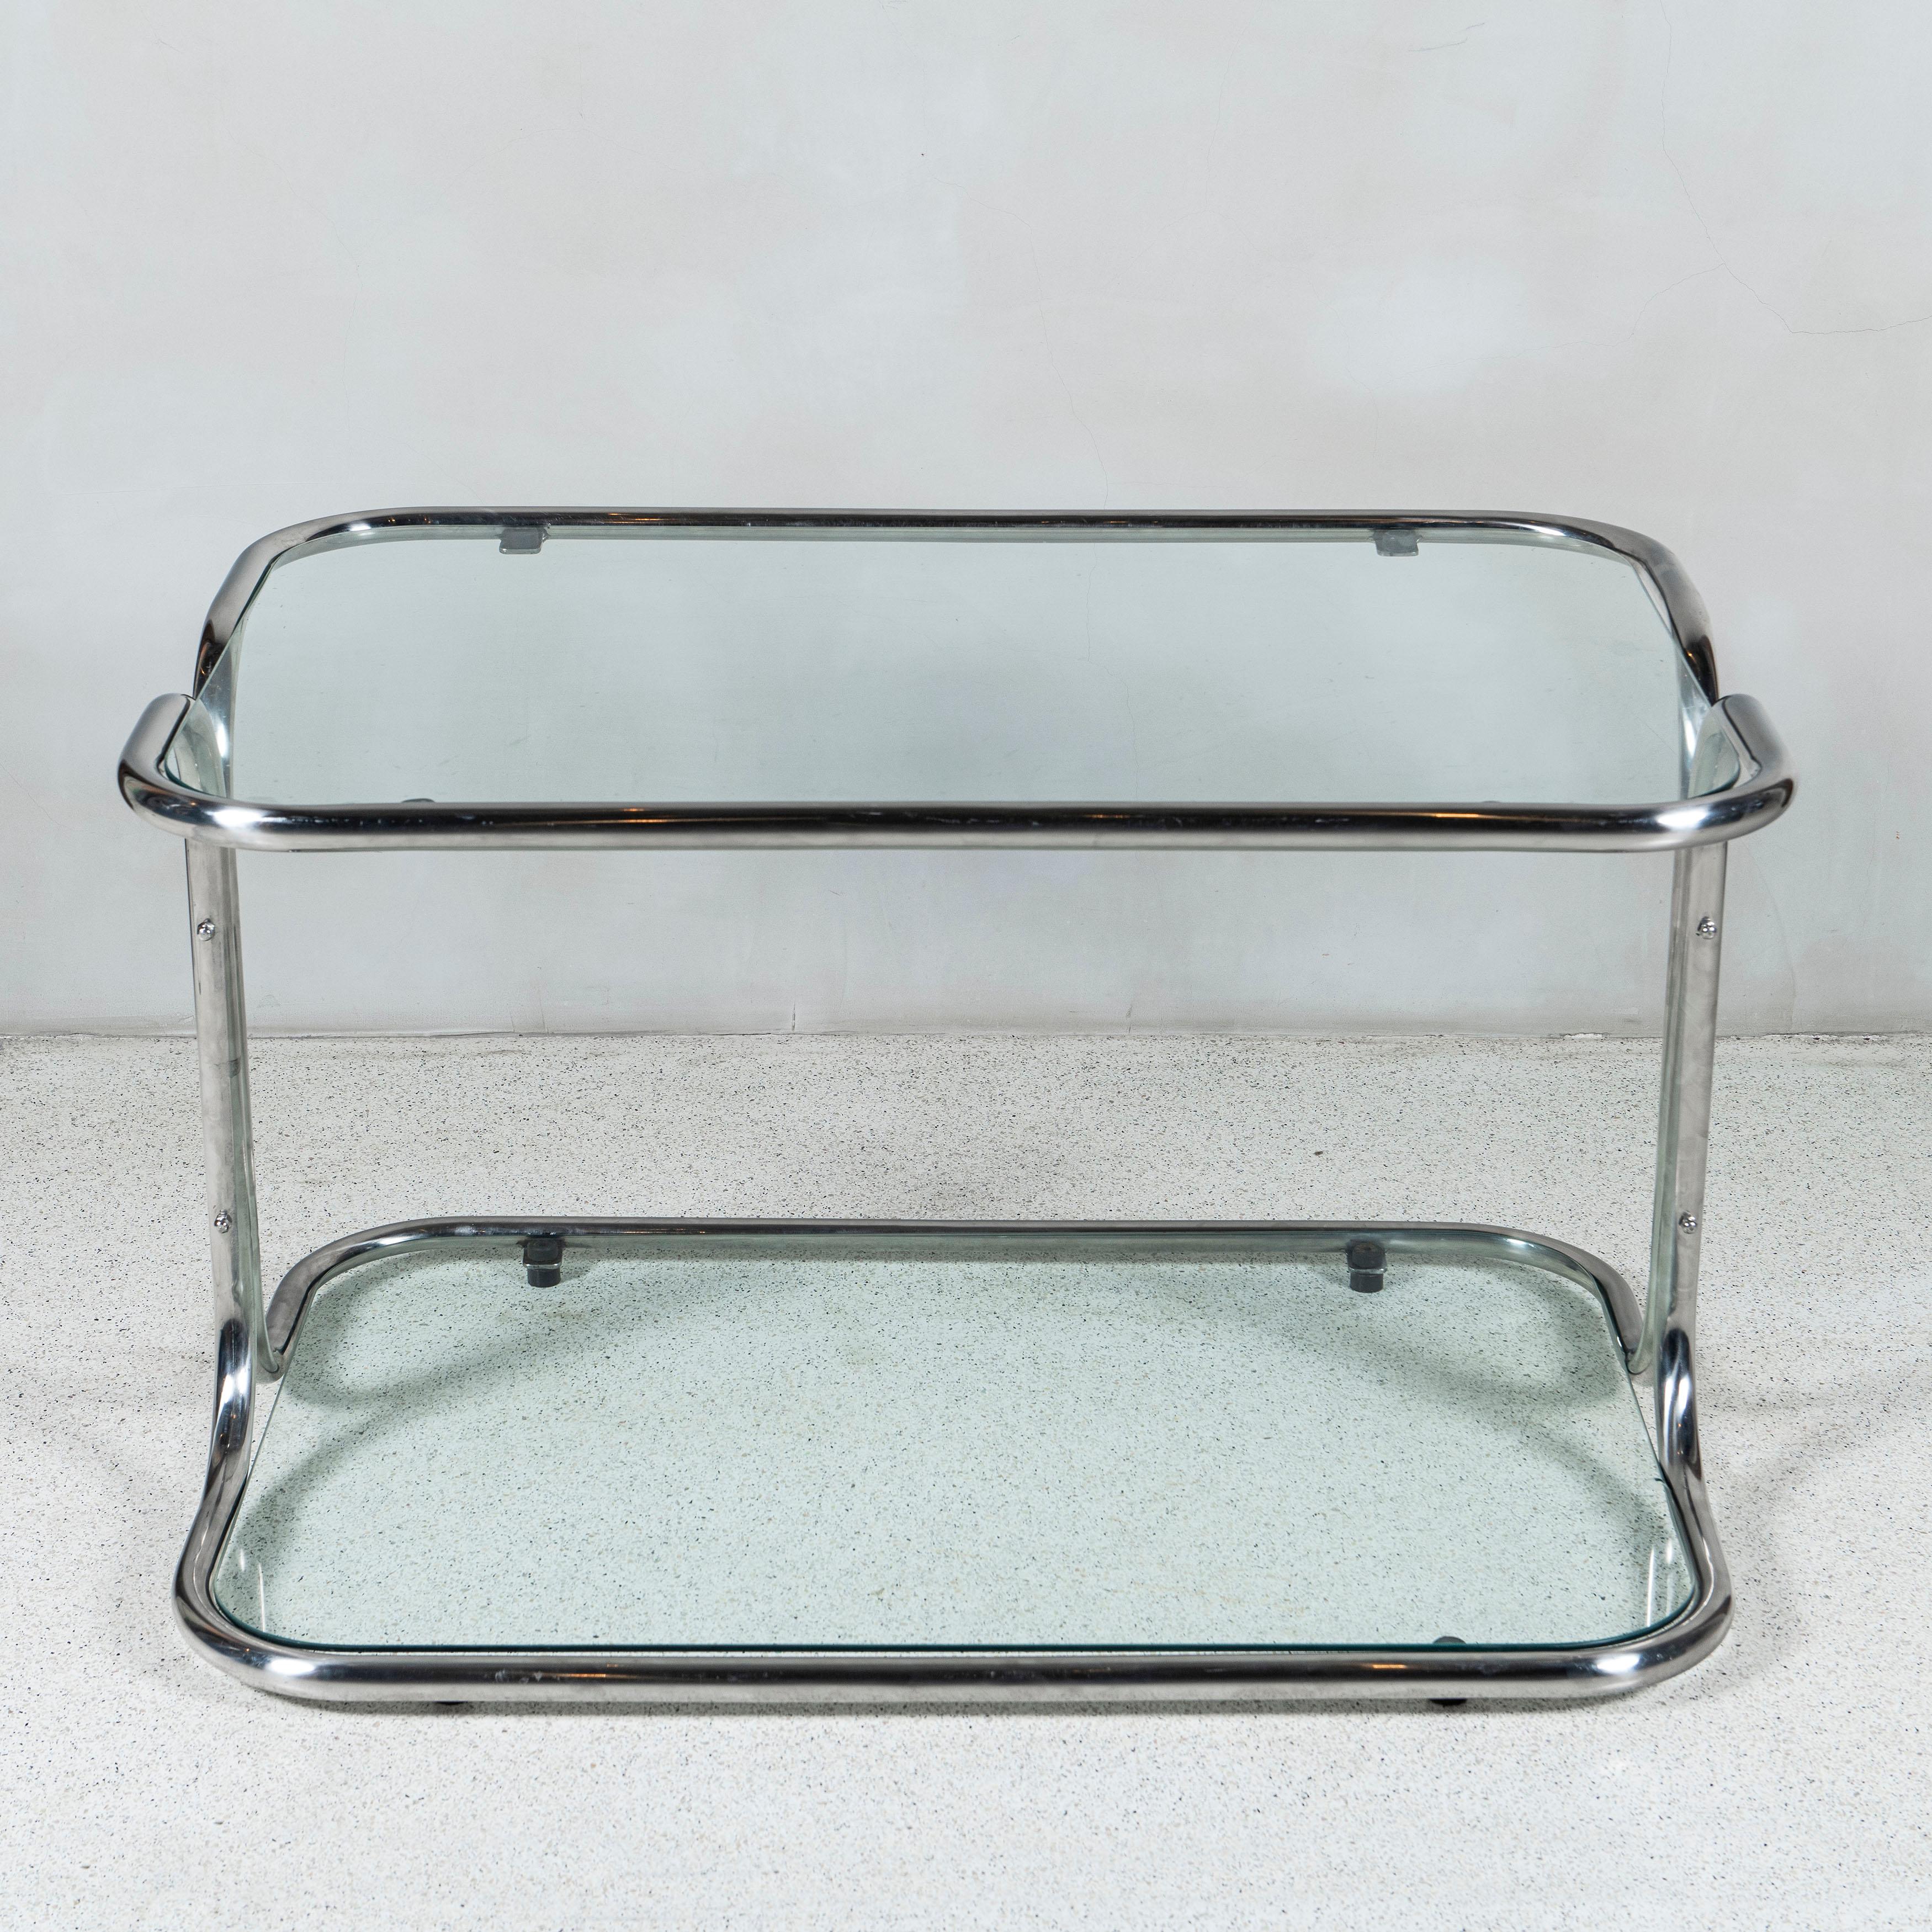 Niedriger Tisch aus Chrom und Glas, entworfen von den Architekten Reinaldo Leiro und Arnoldo Gaite, Argentinien, Buenos Aires, 1970-1971.

Reinaldo Leiro (Argentinien, 1930-2016)
Arnoldo Gaite (Argentinien, 1934-2020).